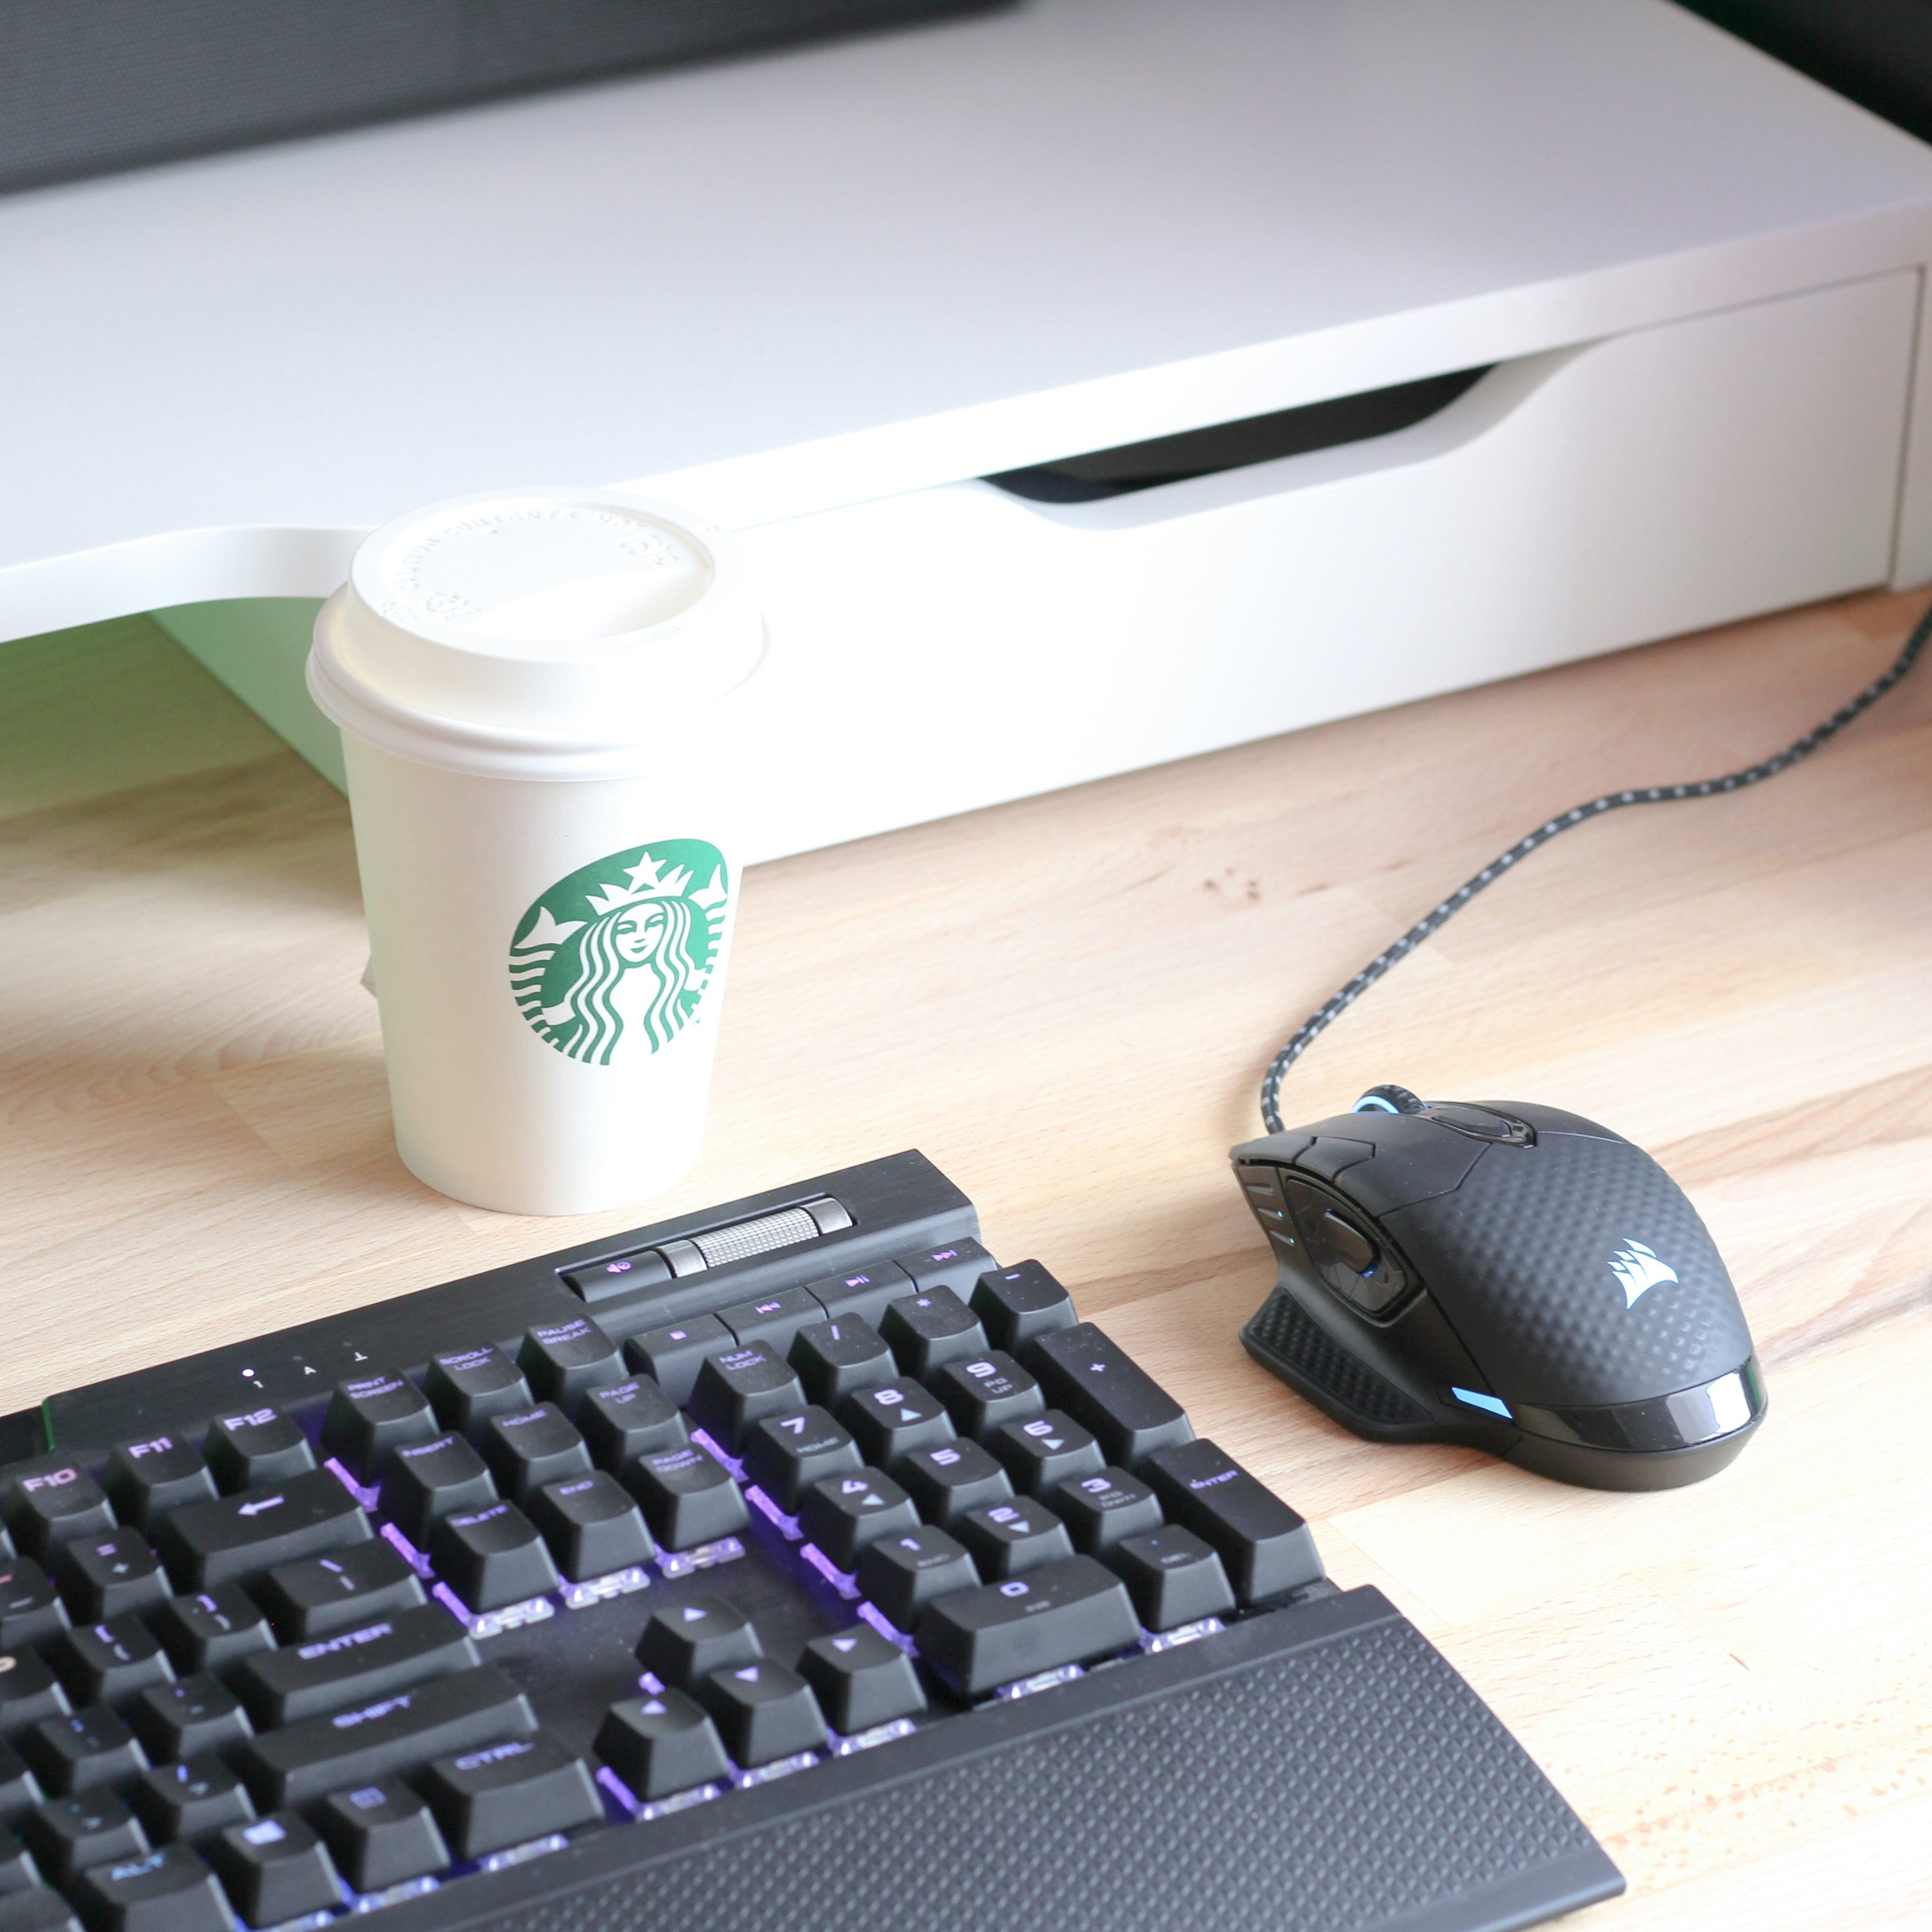 clavier d’ordinateur noir à côté d’un gobelet jetable blanc et vert